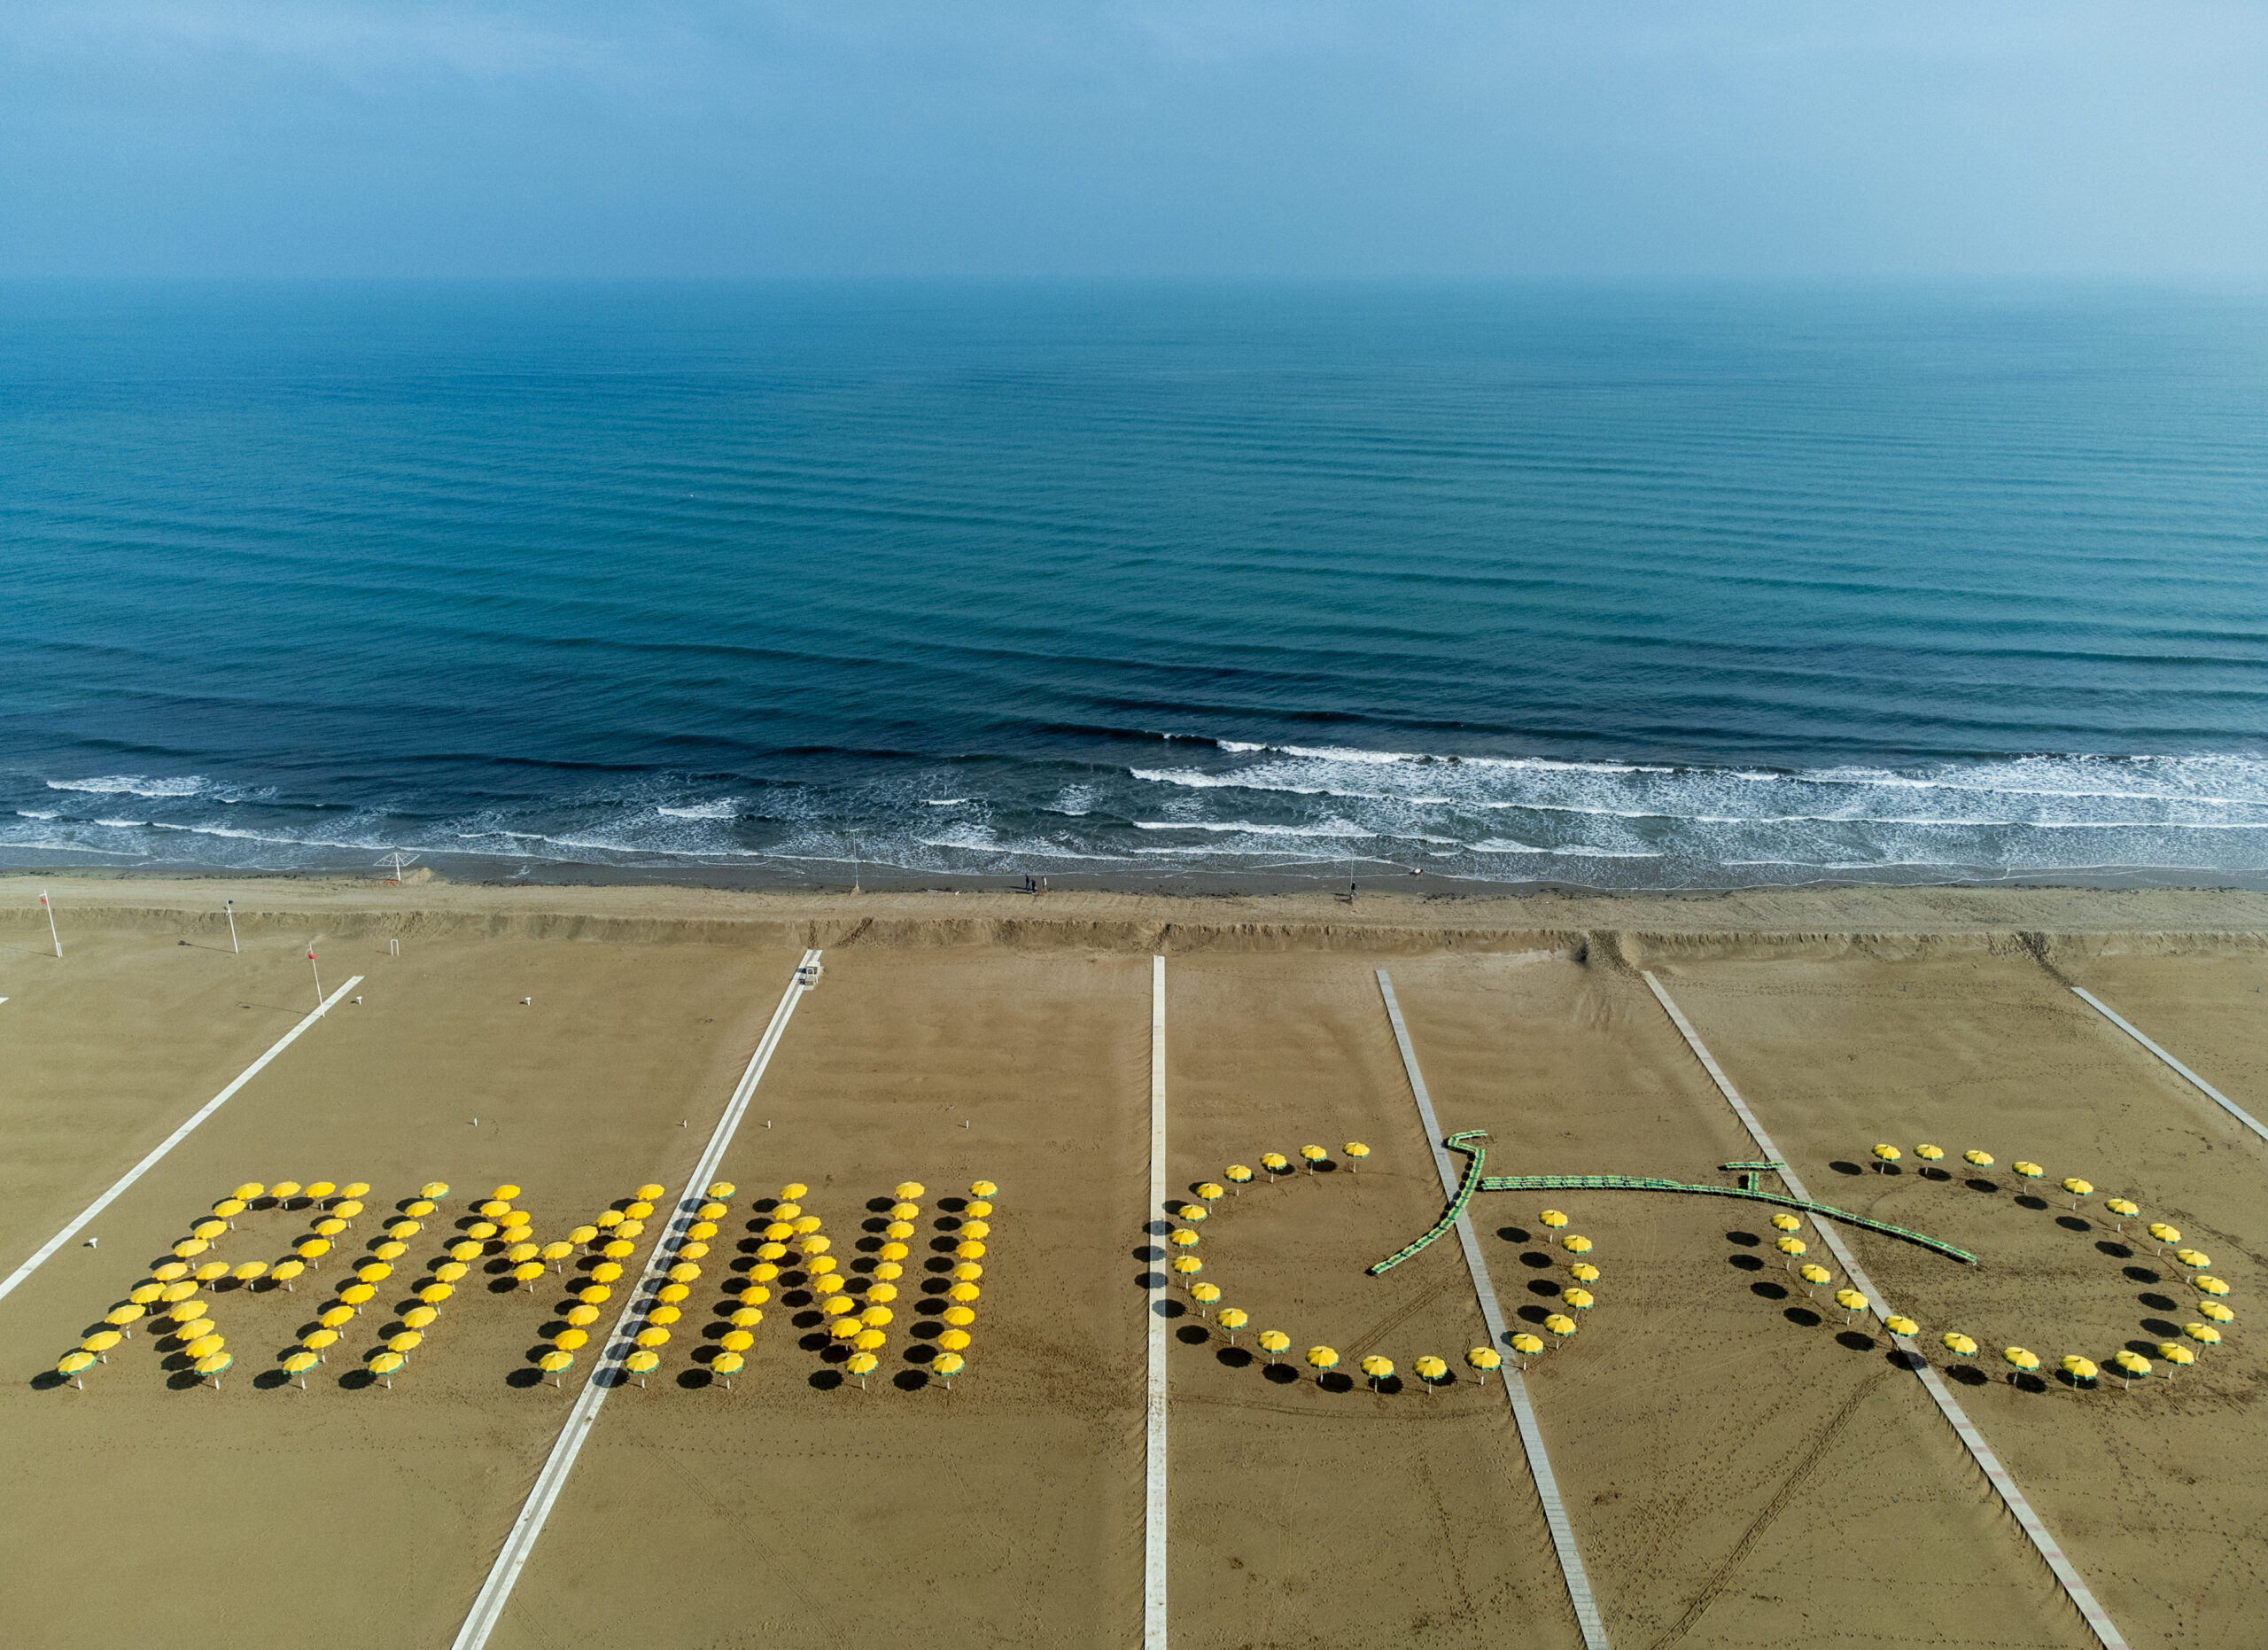 150 ombrelloni e 50 lettini vestono di giallo la spiaggia di Rimini per il lancio del “Tour de France”